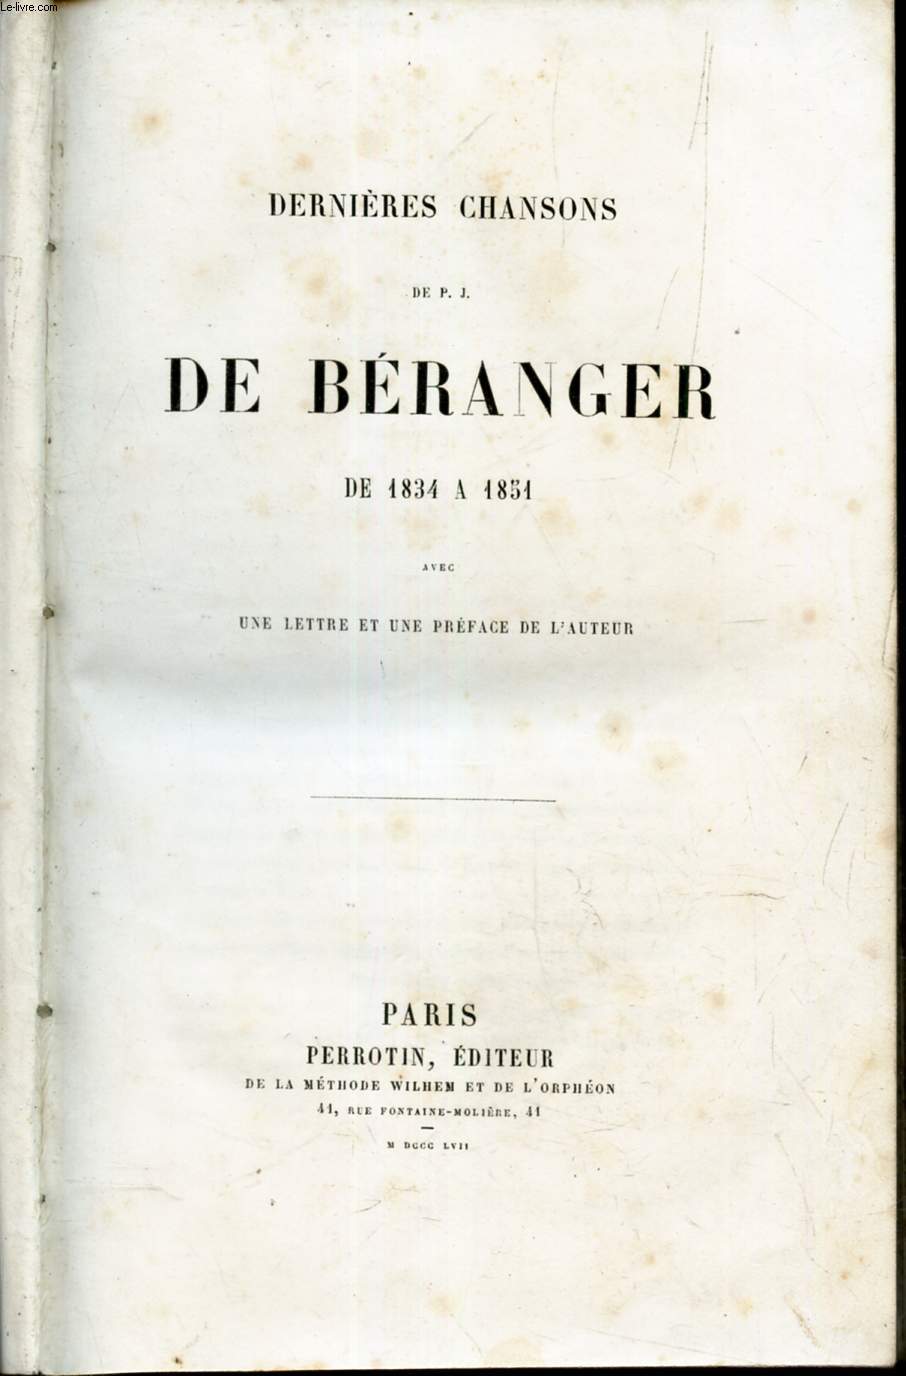 DERNIERES CHANSONS DE P.J. DE BERANGER - DE 1834  1851 avec une lettre et une preface de l'auteur